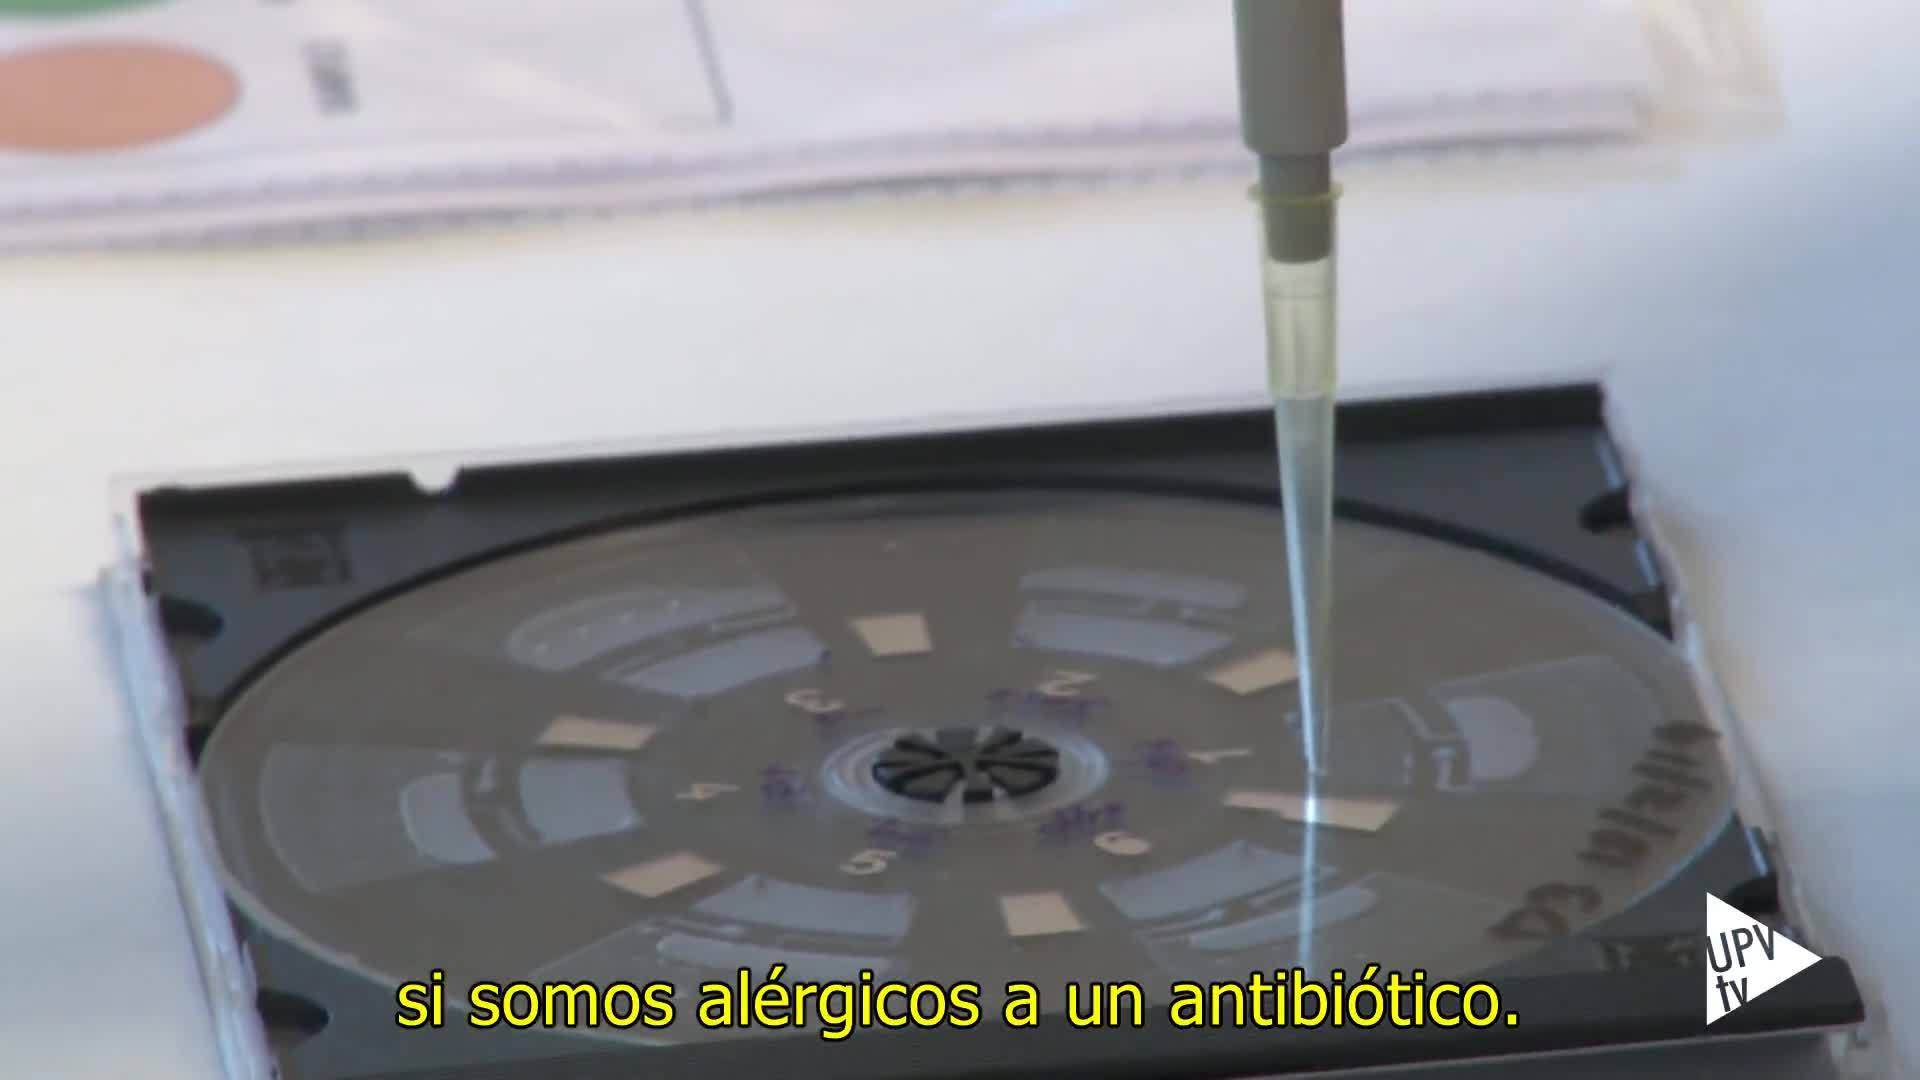 27-02-2019 Nuevo detector de alergias a antibióticos rápido, económico y no invasivo